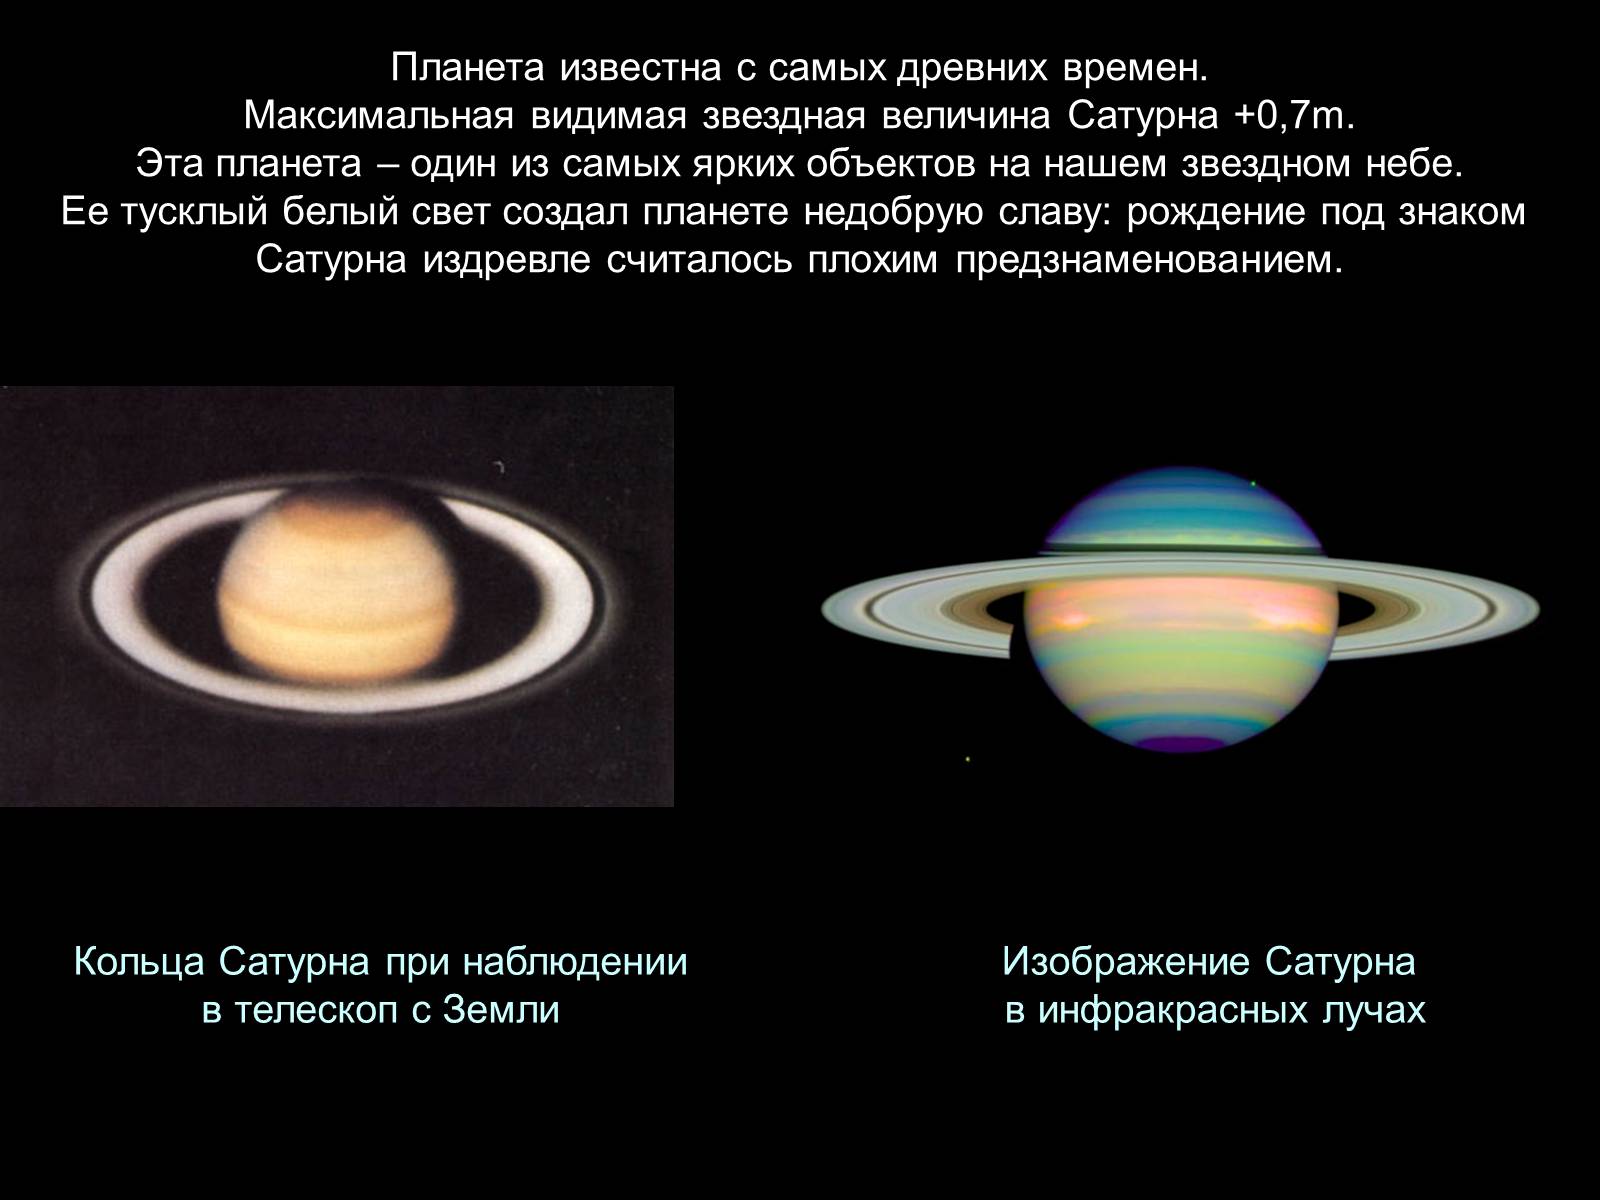 Сатурн видимая Звездная величина